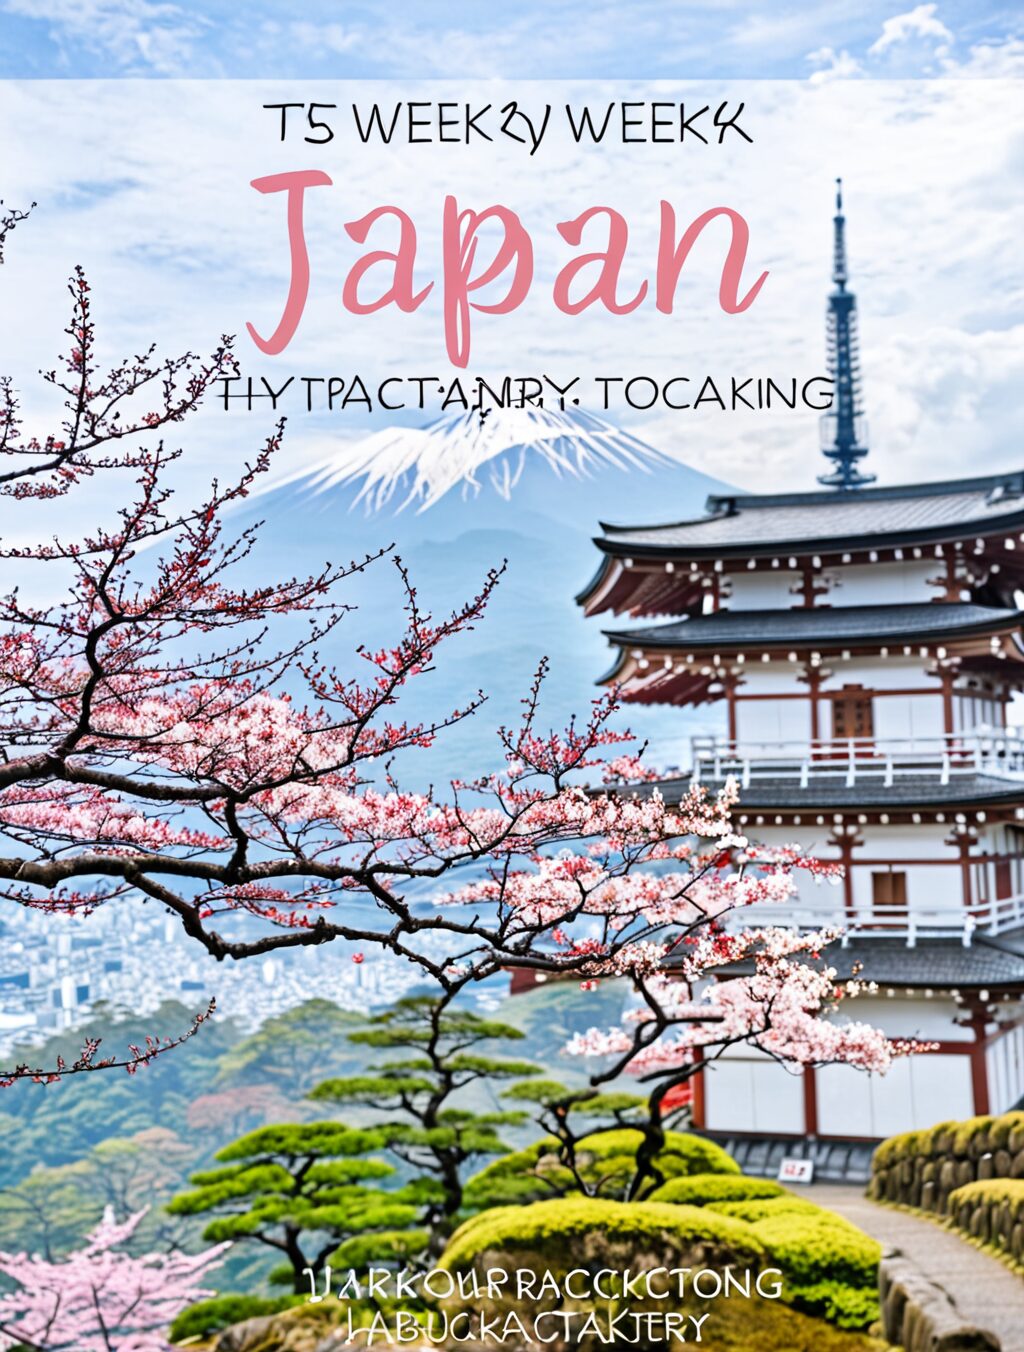 japan 3 week itinerary backpacking